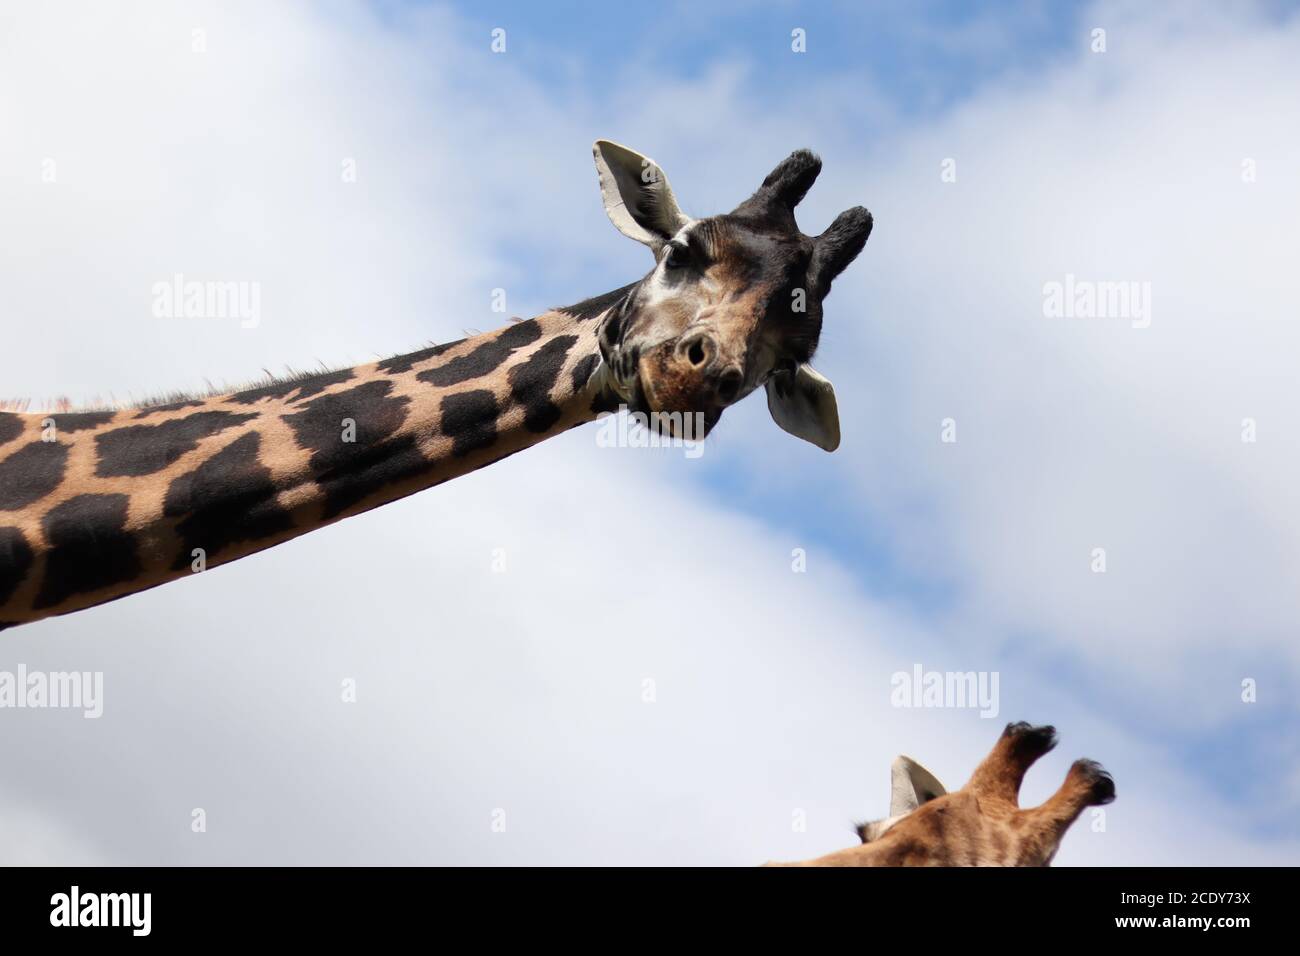 Neugierig lustige Giraffe Blick vom Himmel - ungewöhnlich Humorvolles Naturtier Stockfoto